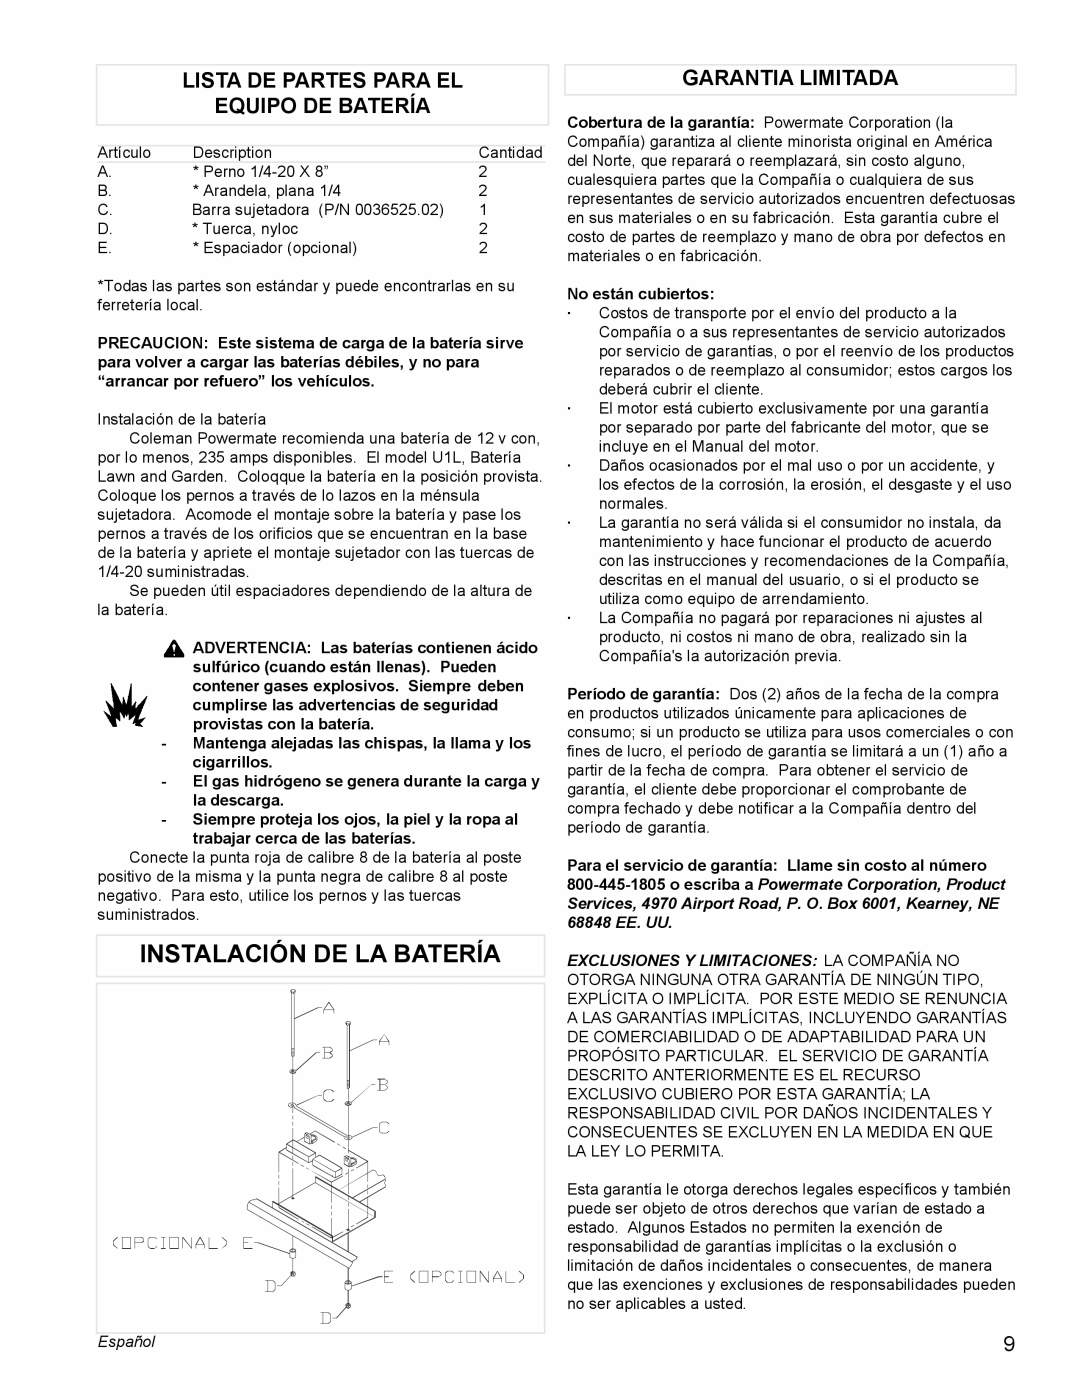 Powermate PMC505622 manual Instalación De La Batería, Lista De Partes Para El Equipo De Batería, Garantia Limitada, Español 